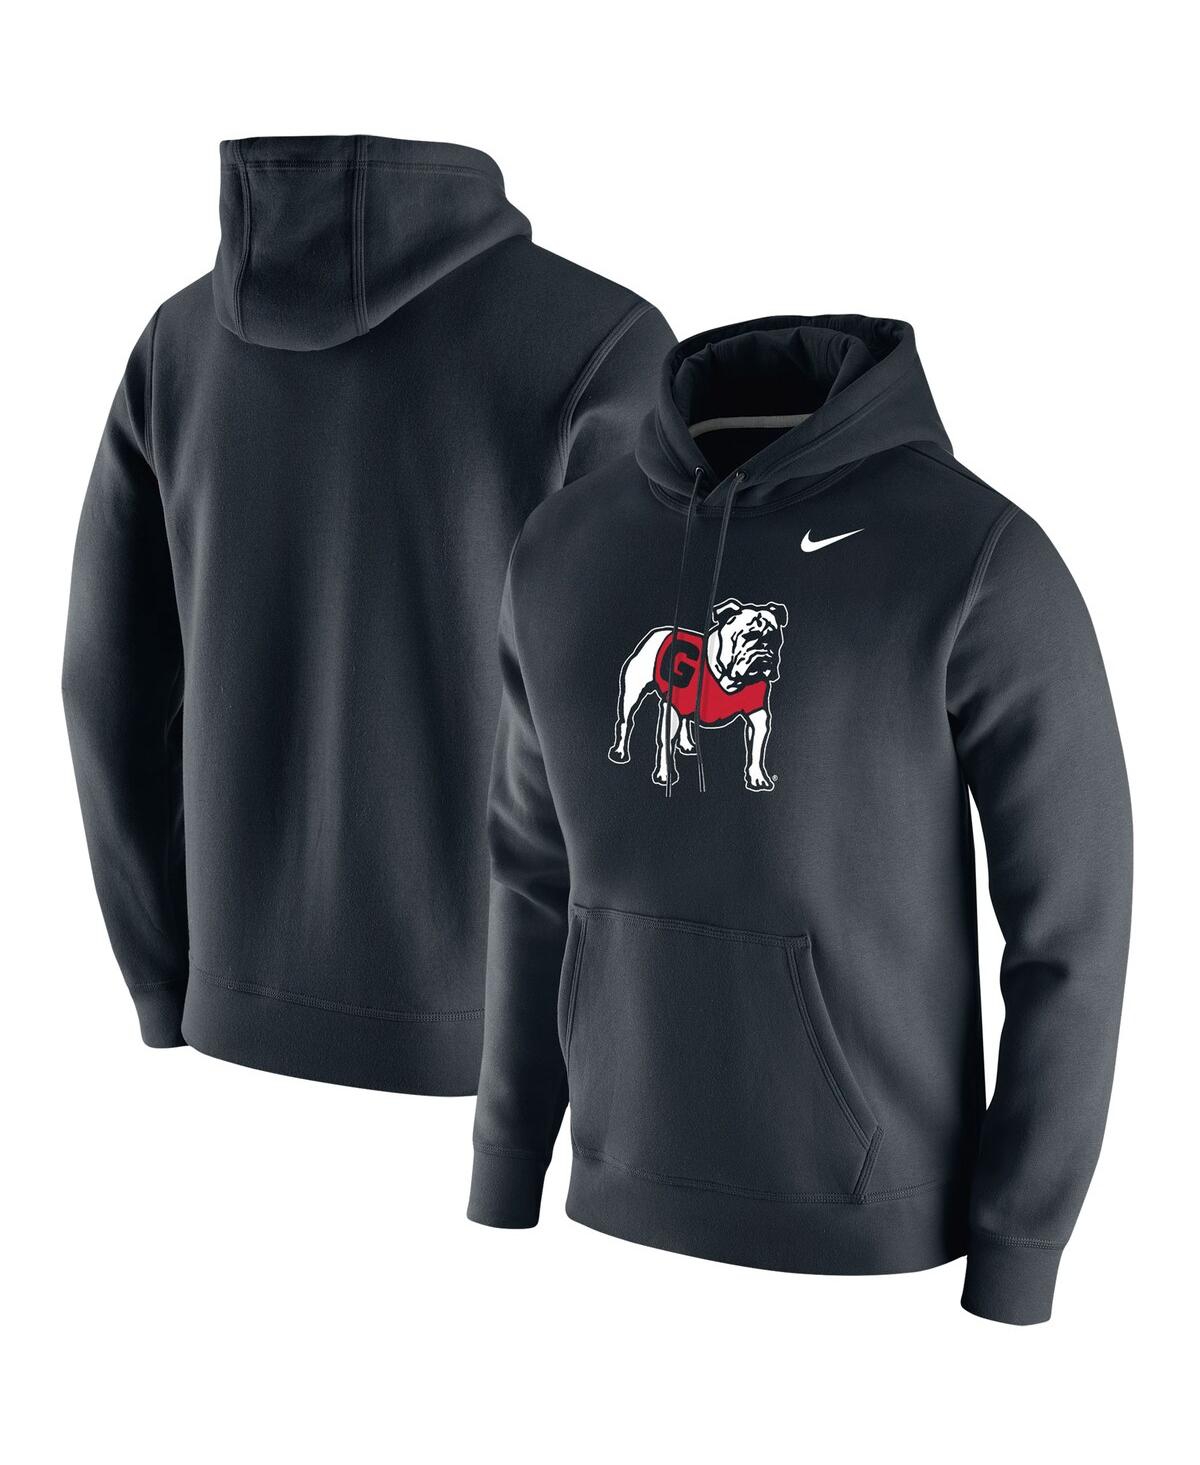 Shop Nike Men's  Black Georgia Bulldogs Vintage-like School Logo Pullover Hoodie